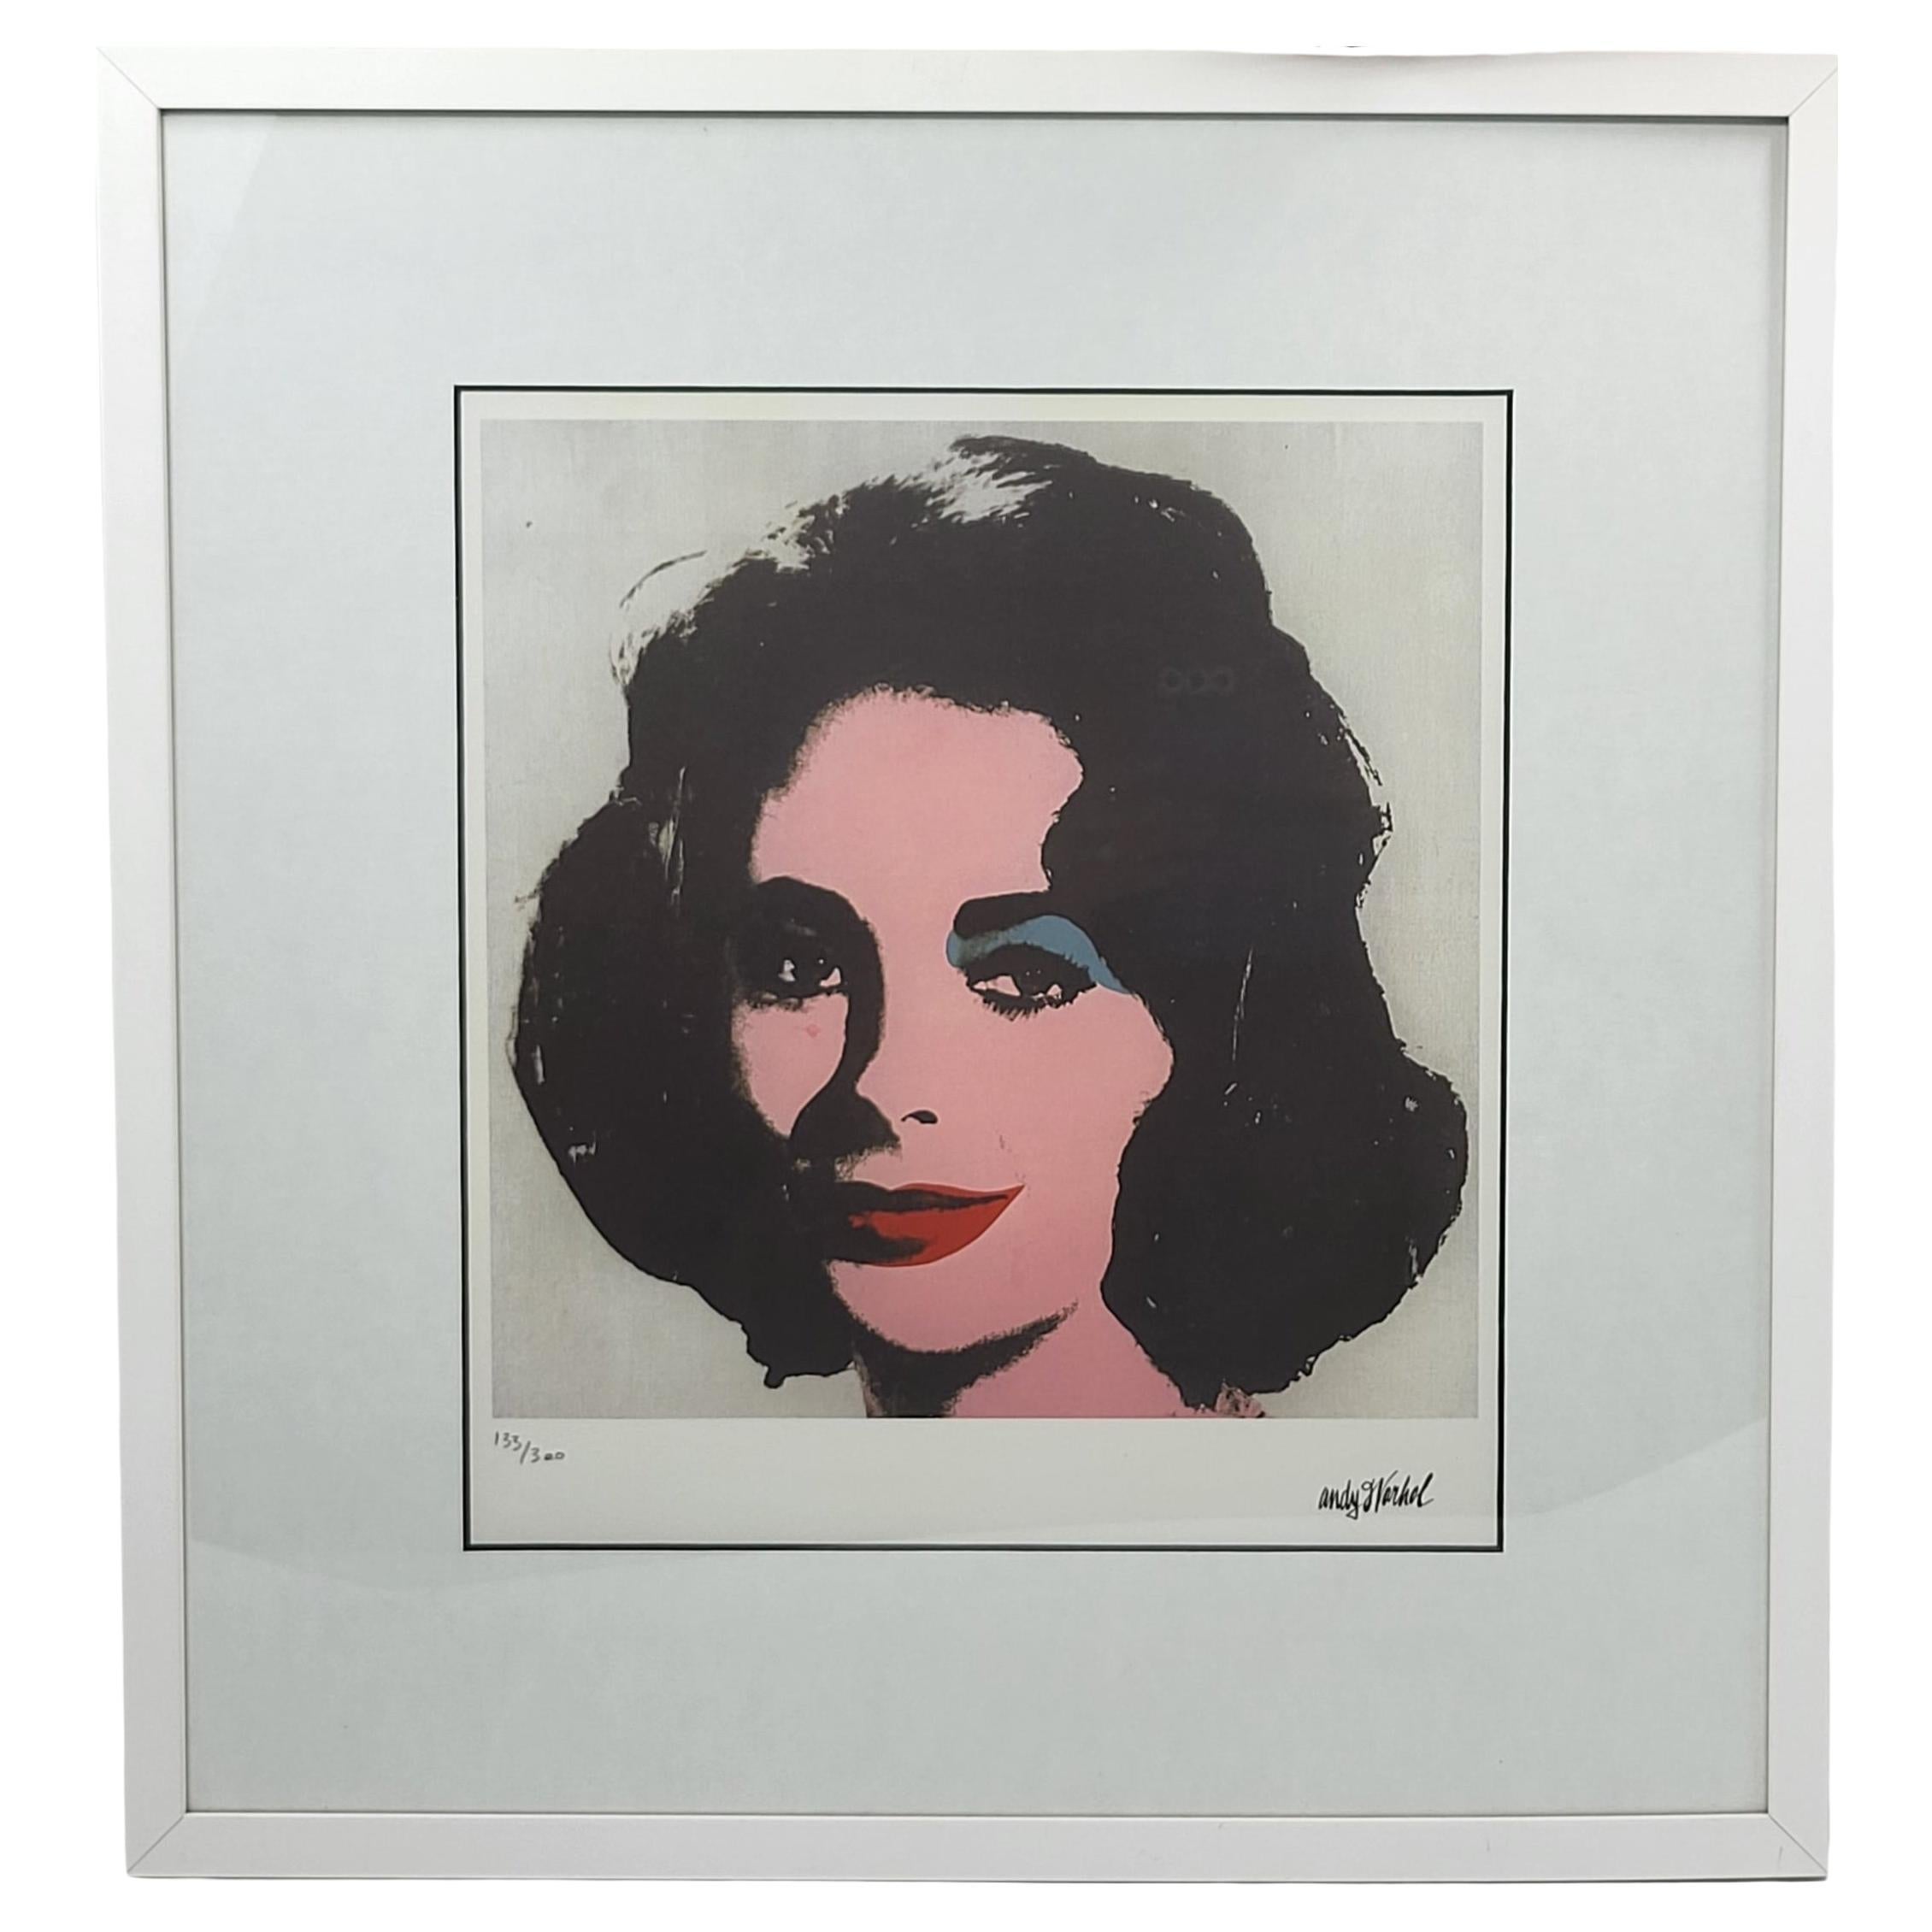 Toile Andy Warhol Elizabeth Taylor 1963 Edition Limitée 133/300 certifié CMOA 